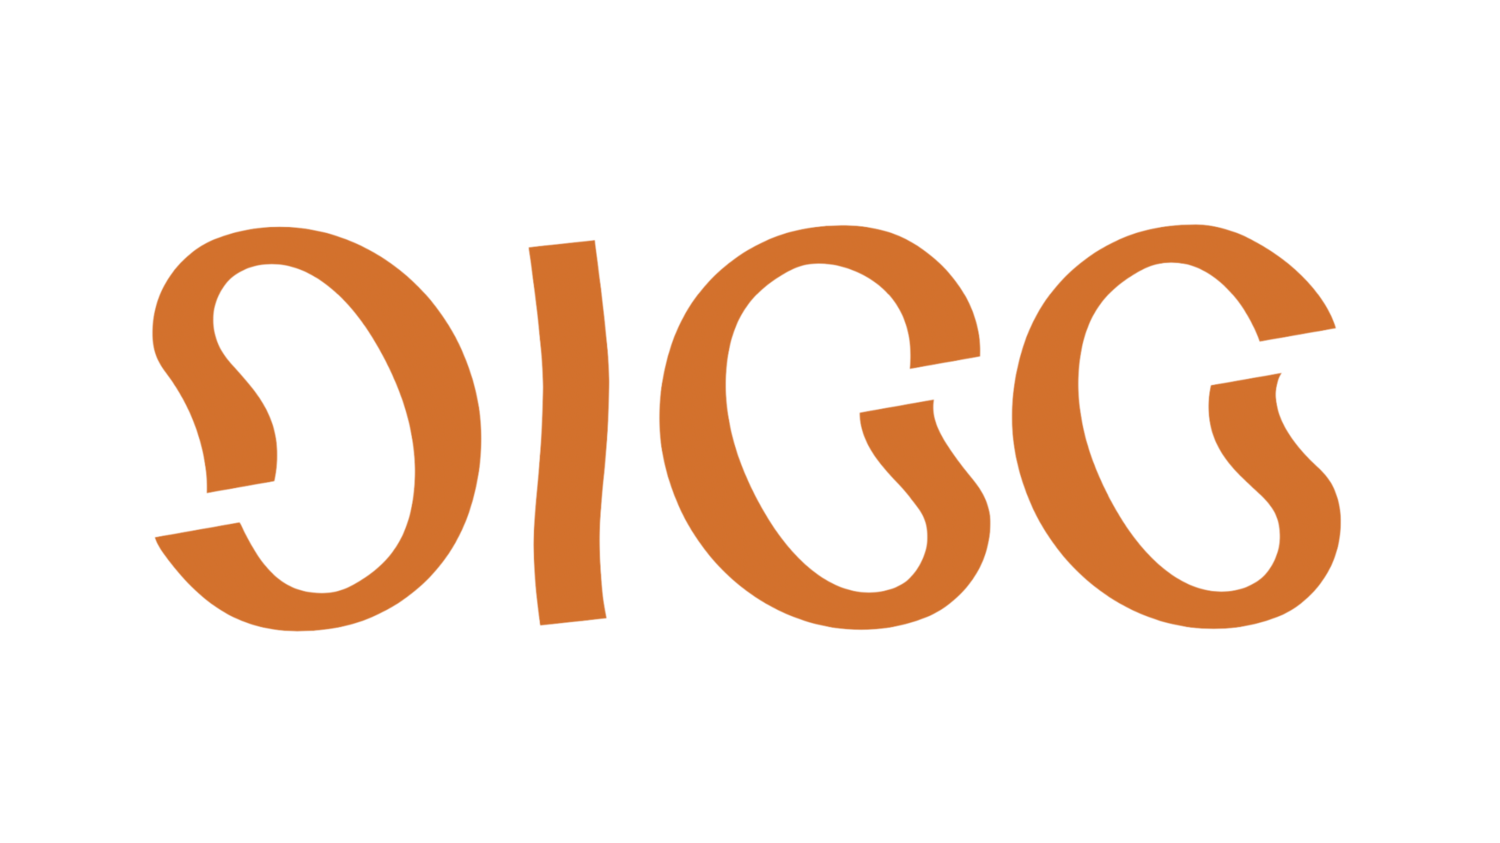 Image of Digg